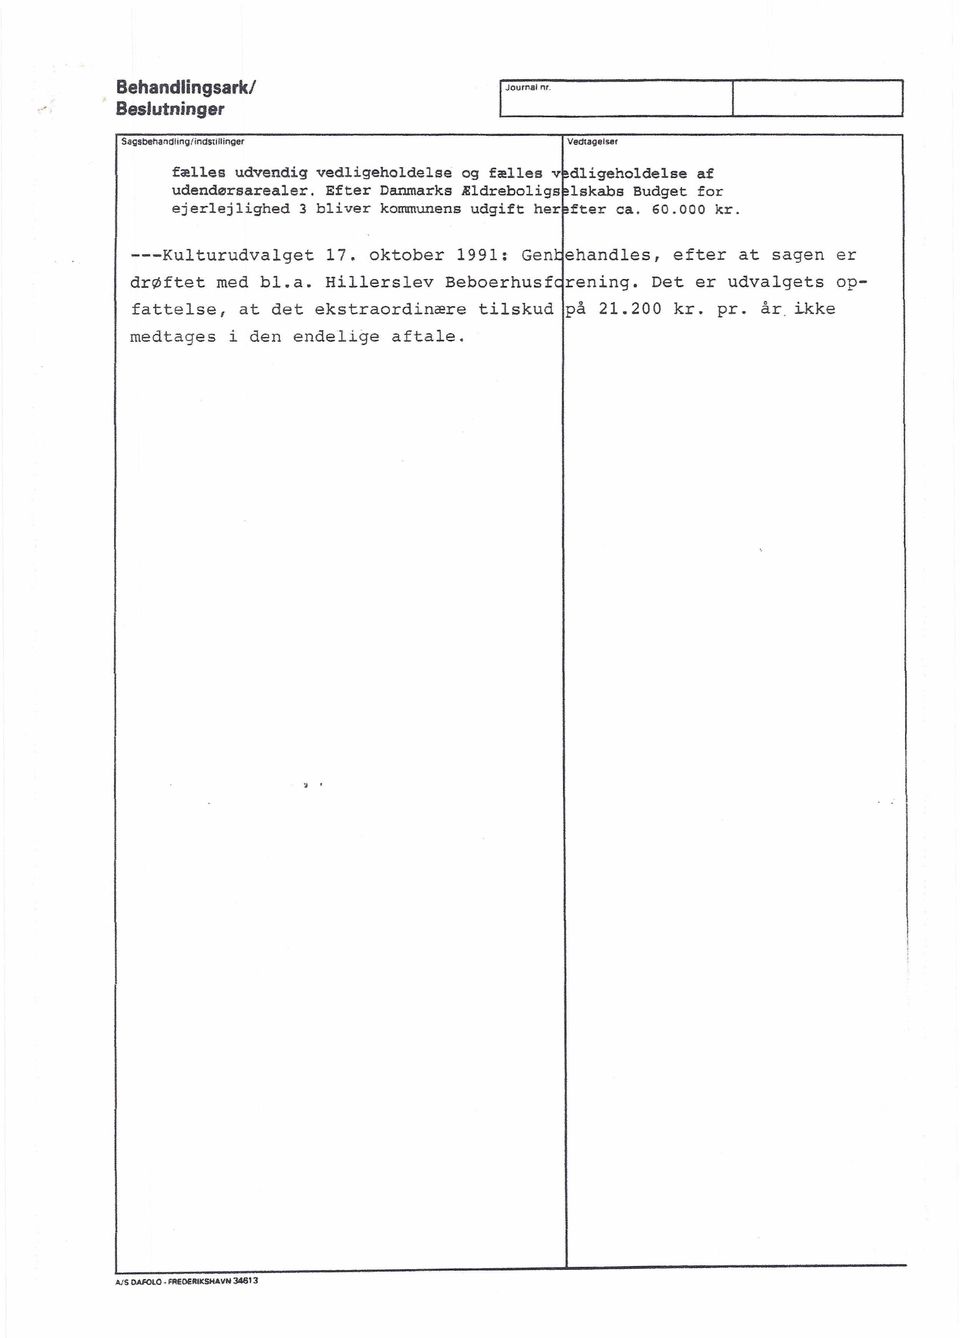 60.000 kr. ---Kulturudvalget 17. oktober 1991: Gentehandles, efter at sagen er drøftet med bl.a. Hillerslev Beboerhusferening.